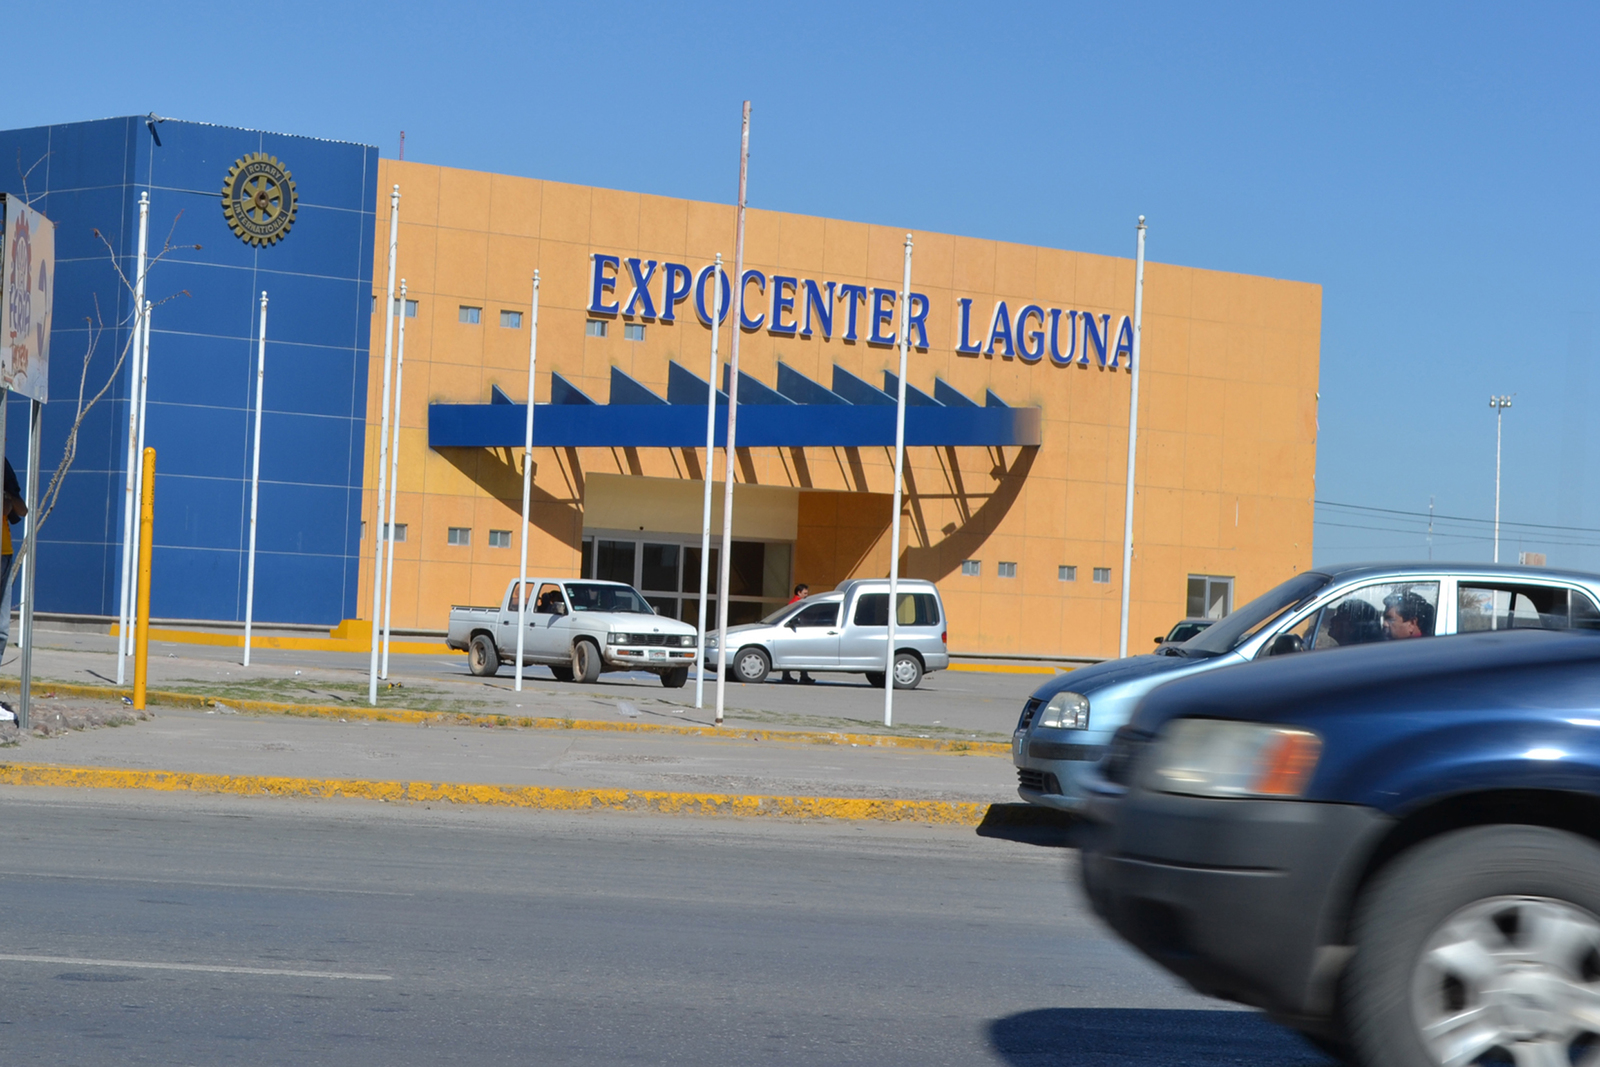 Celebración. La ceremonia eucarística será el 11 de febrero en el Expo Center en punto de las 12:00 horas. (ARCHIVO)